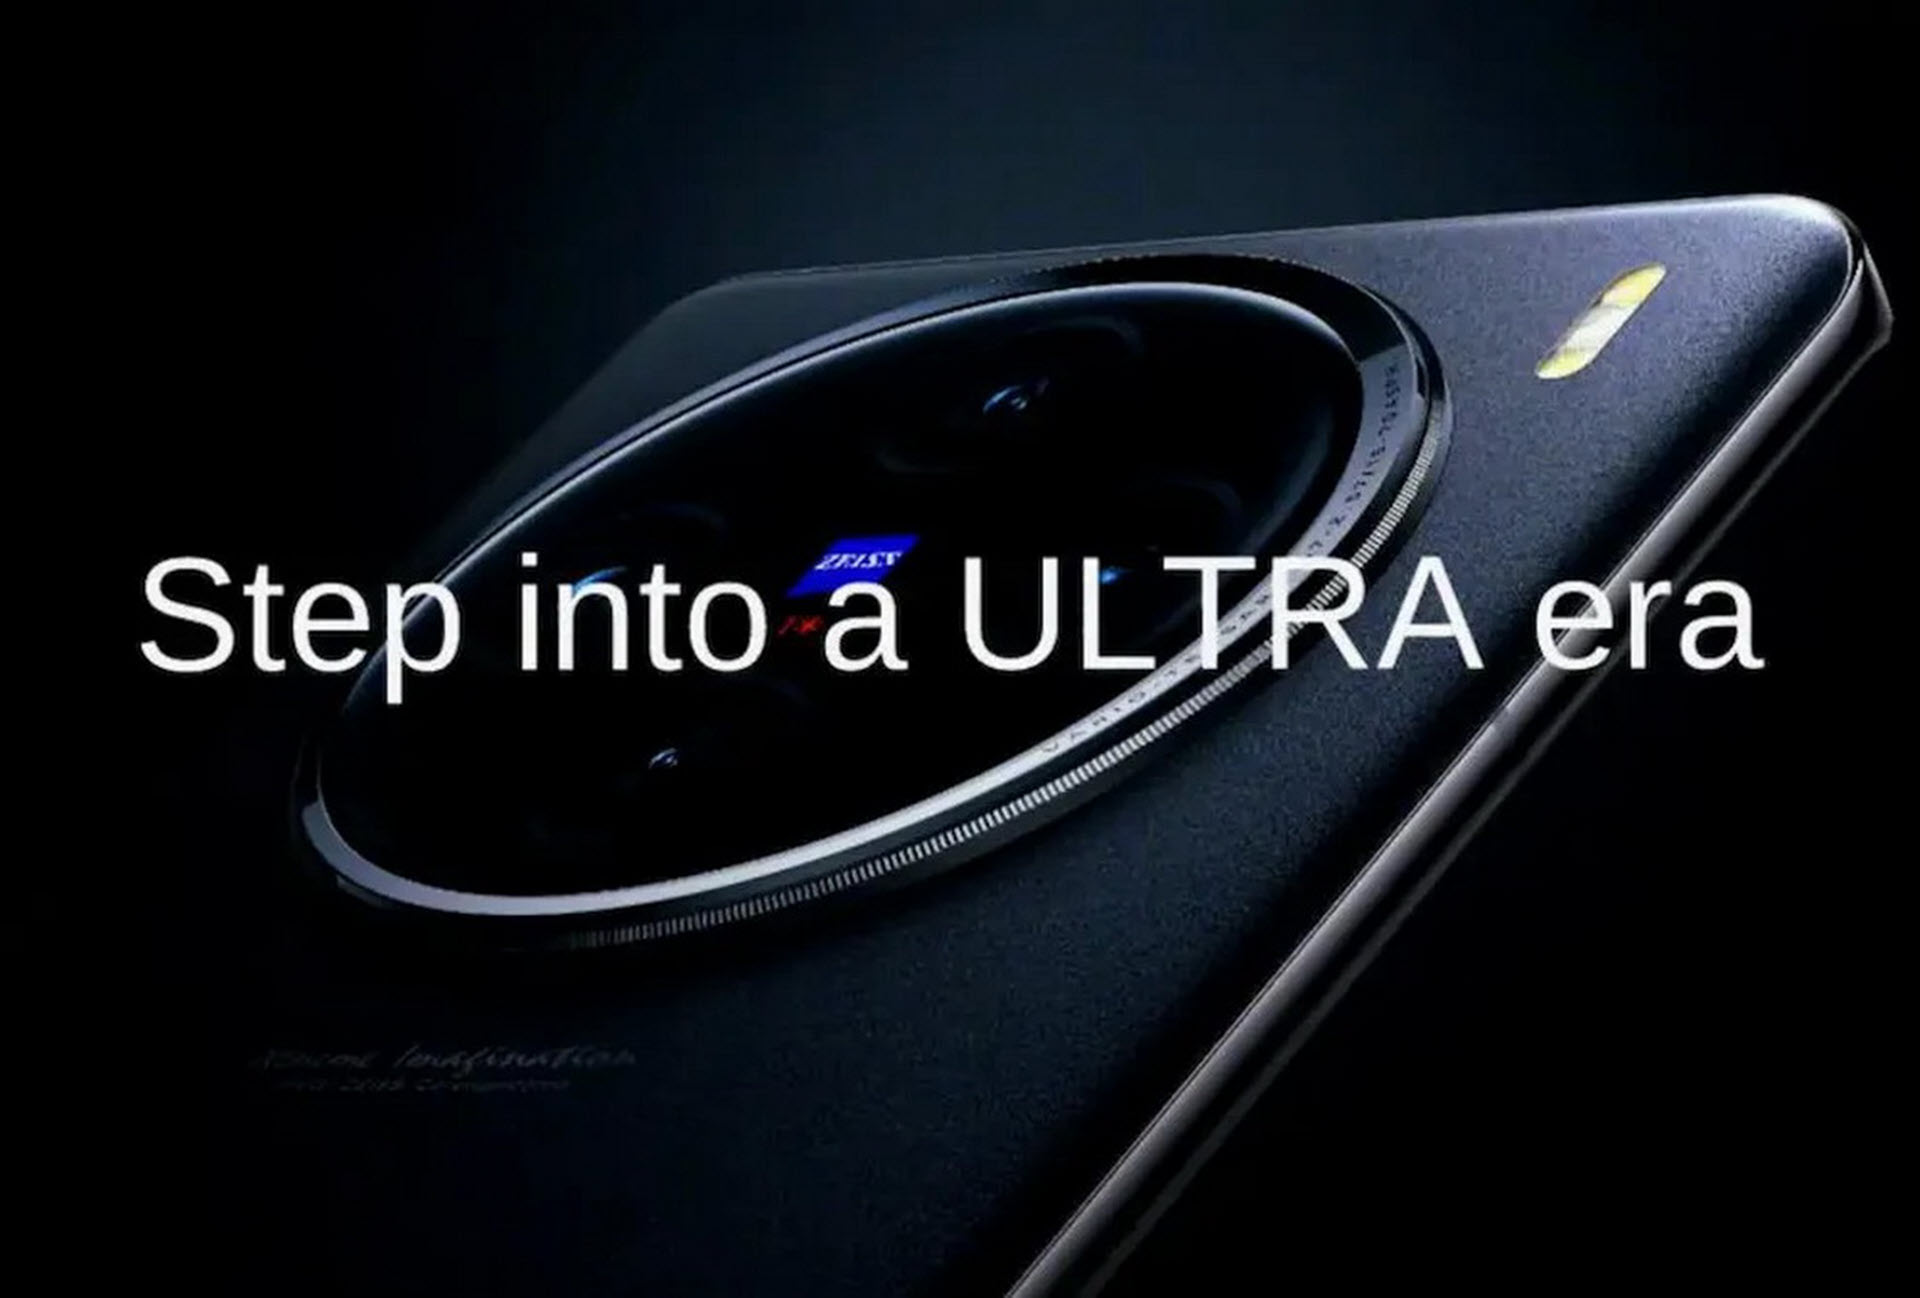 Η vivo μπαίνει στην μάχη των flagship φωτογραφικών κινητών με το νέο X100 Ultra